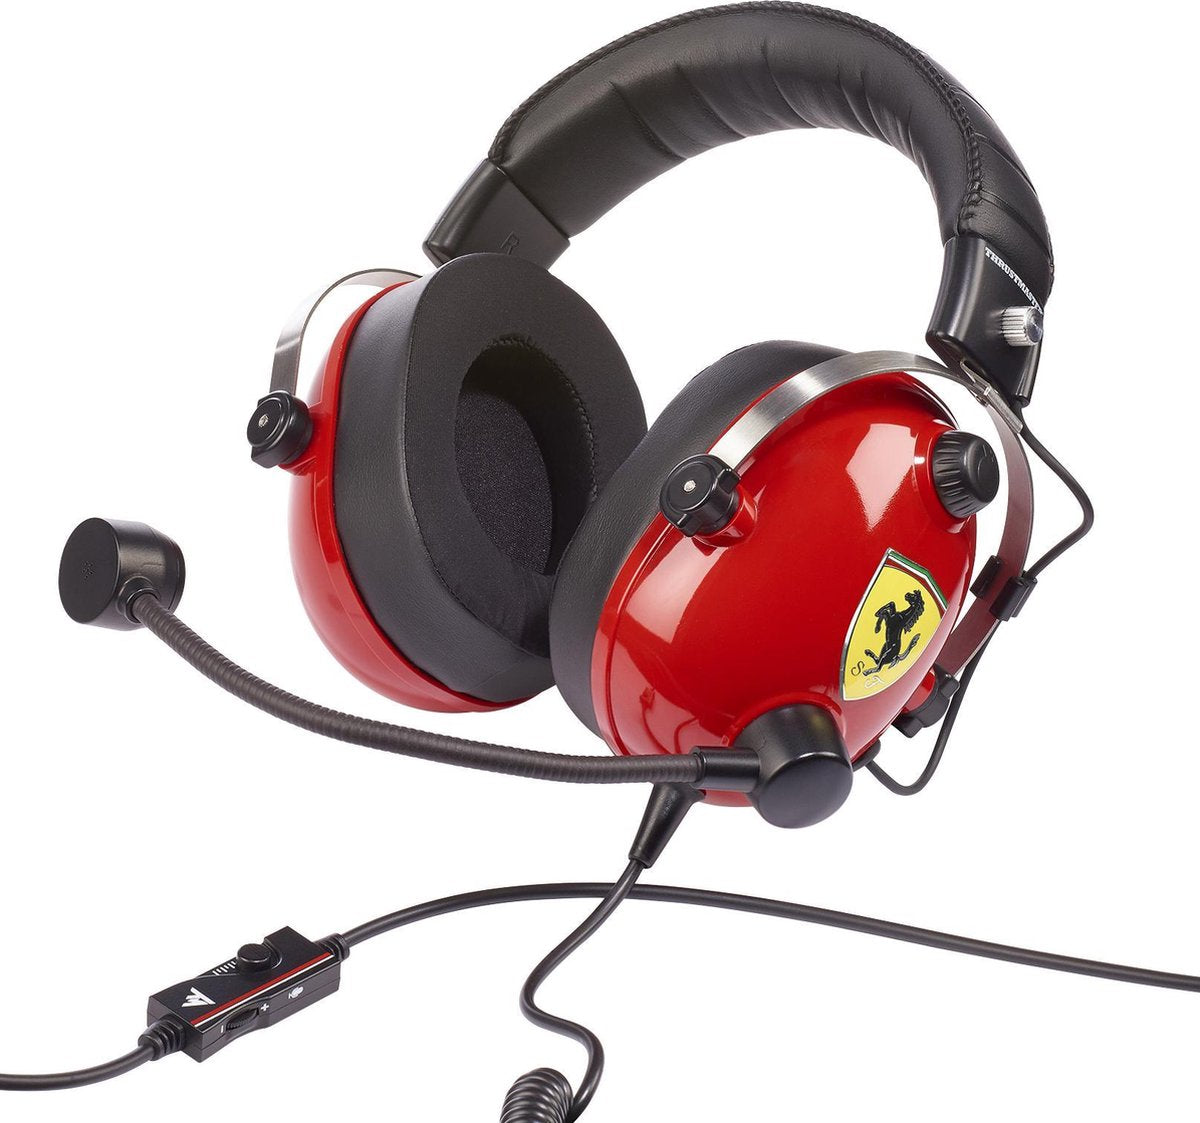 Thrustmaster T.Racing Scuderia Ferrari Headset